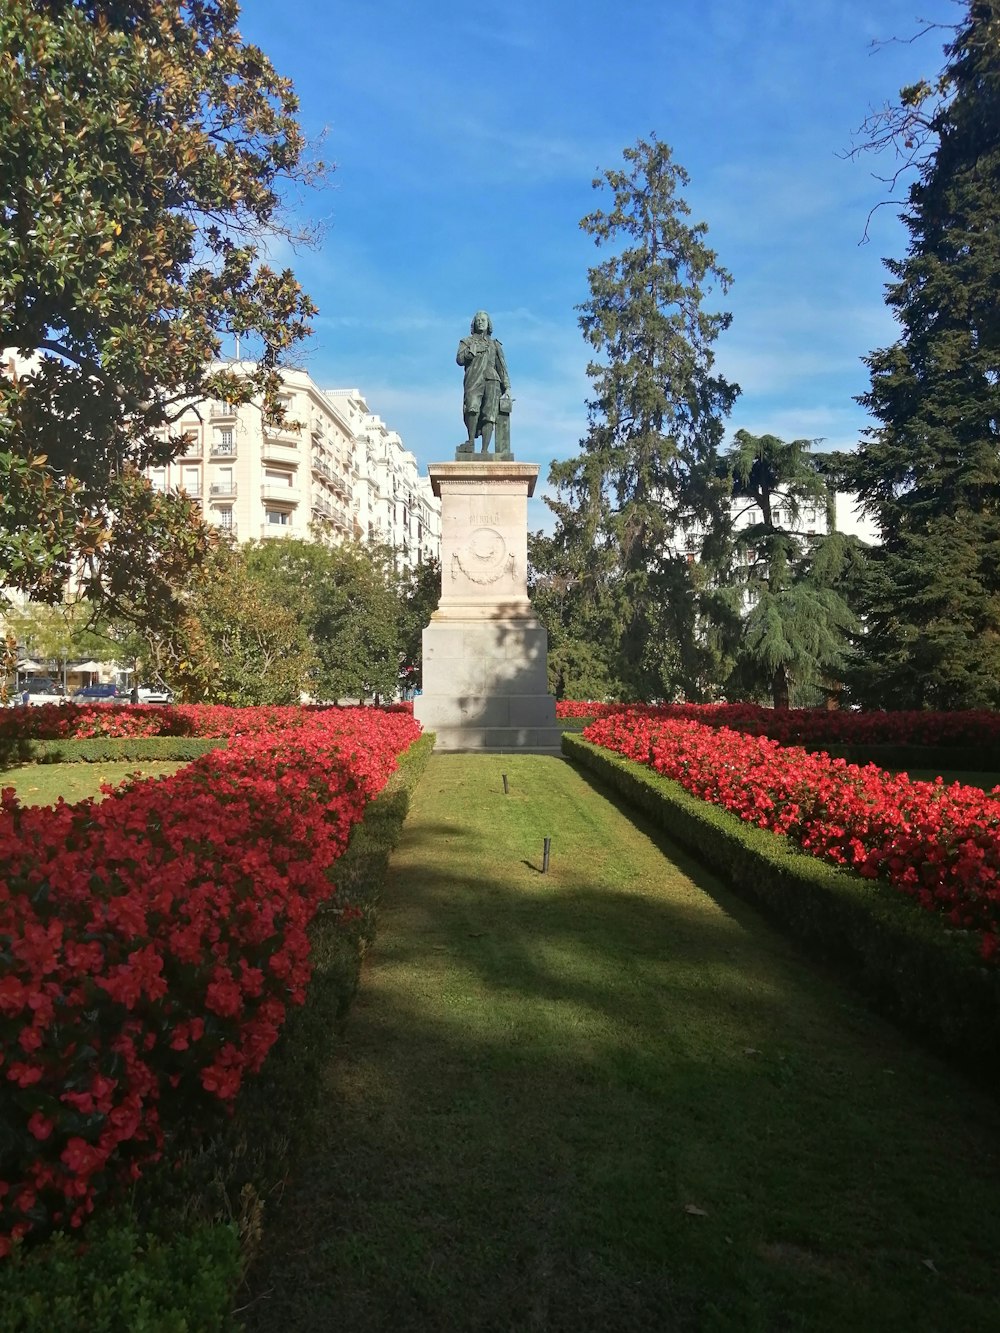 꽃밭 한가운데에 있는 동상